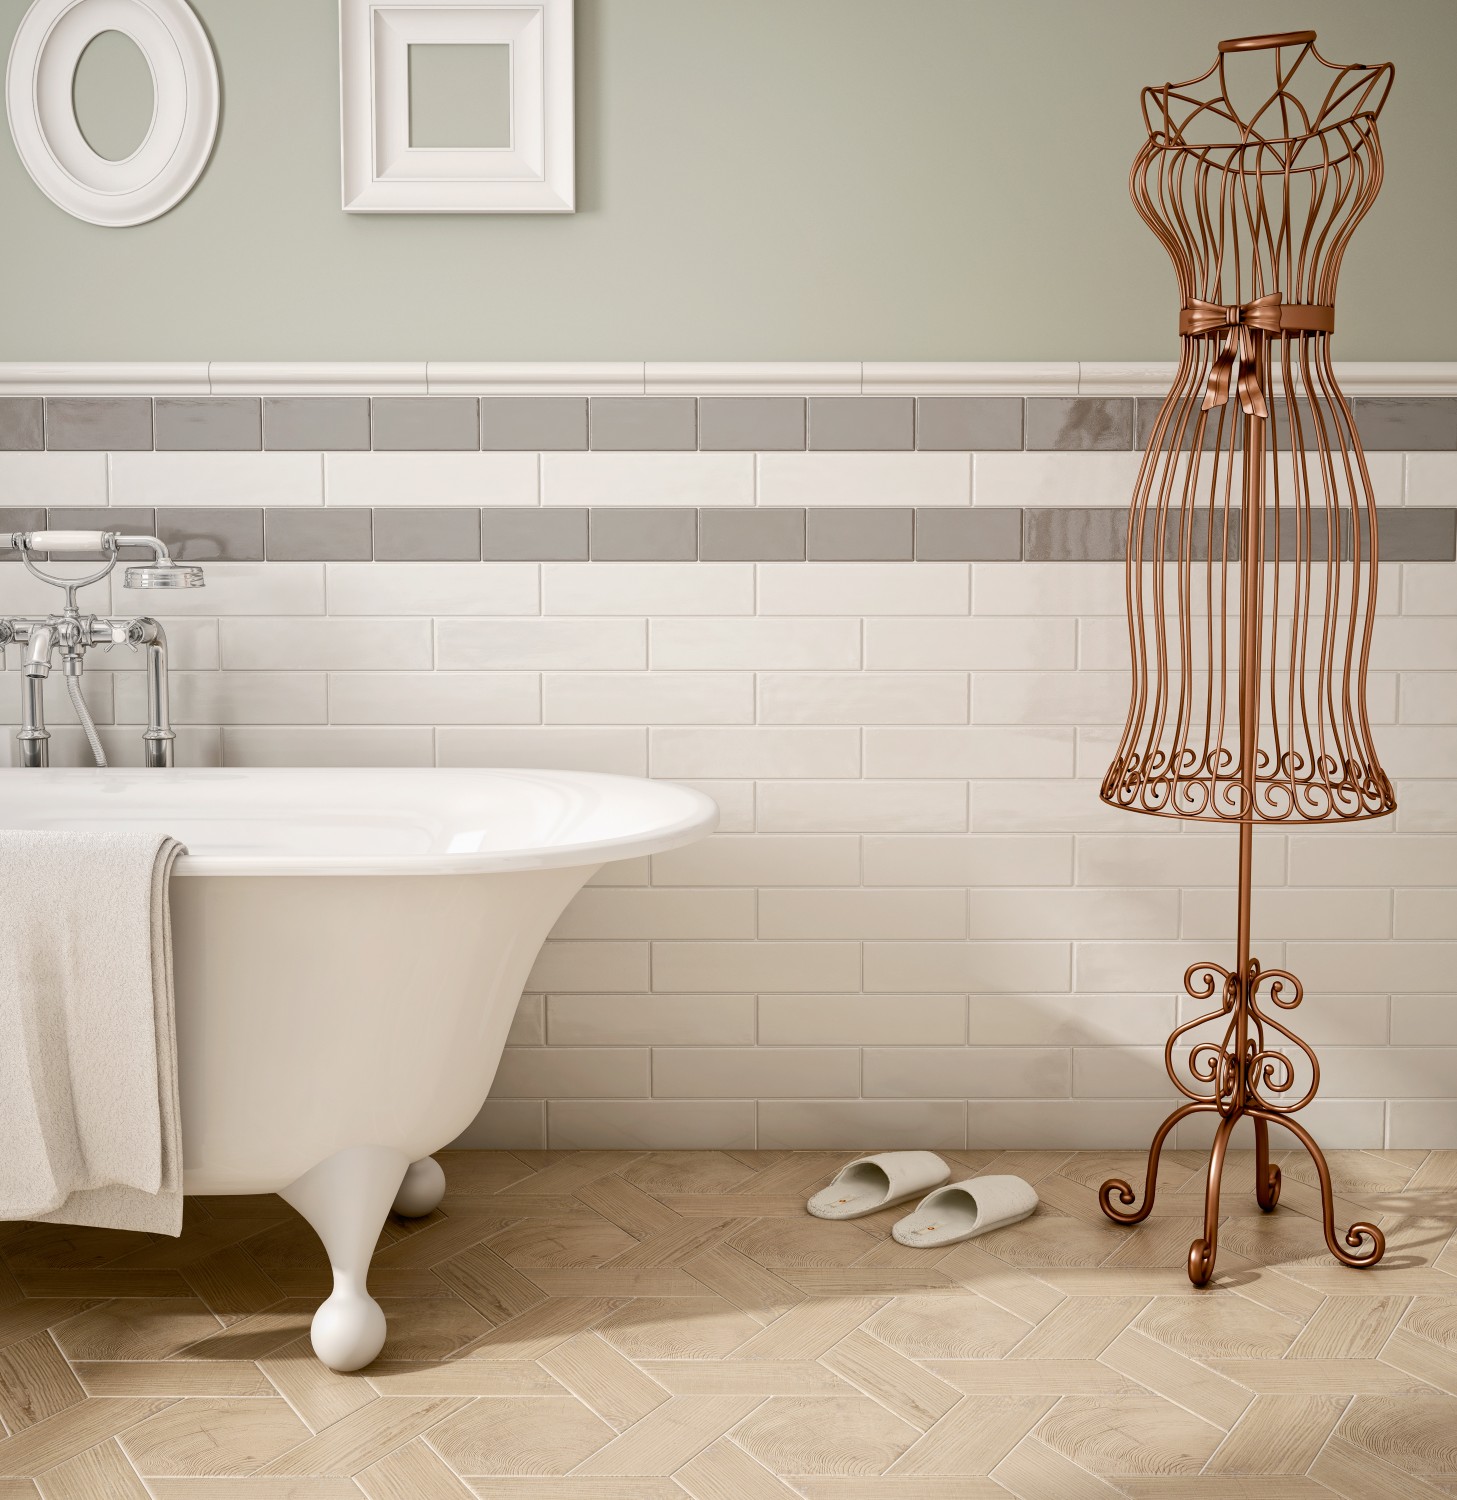 Rund ums Haus Badezimmer harmonisch gestalten mit hochwertigen Feinsteinzeugfliesen der Marke Grespania - News, Bild 1